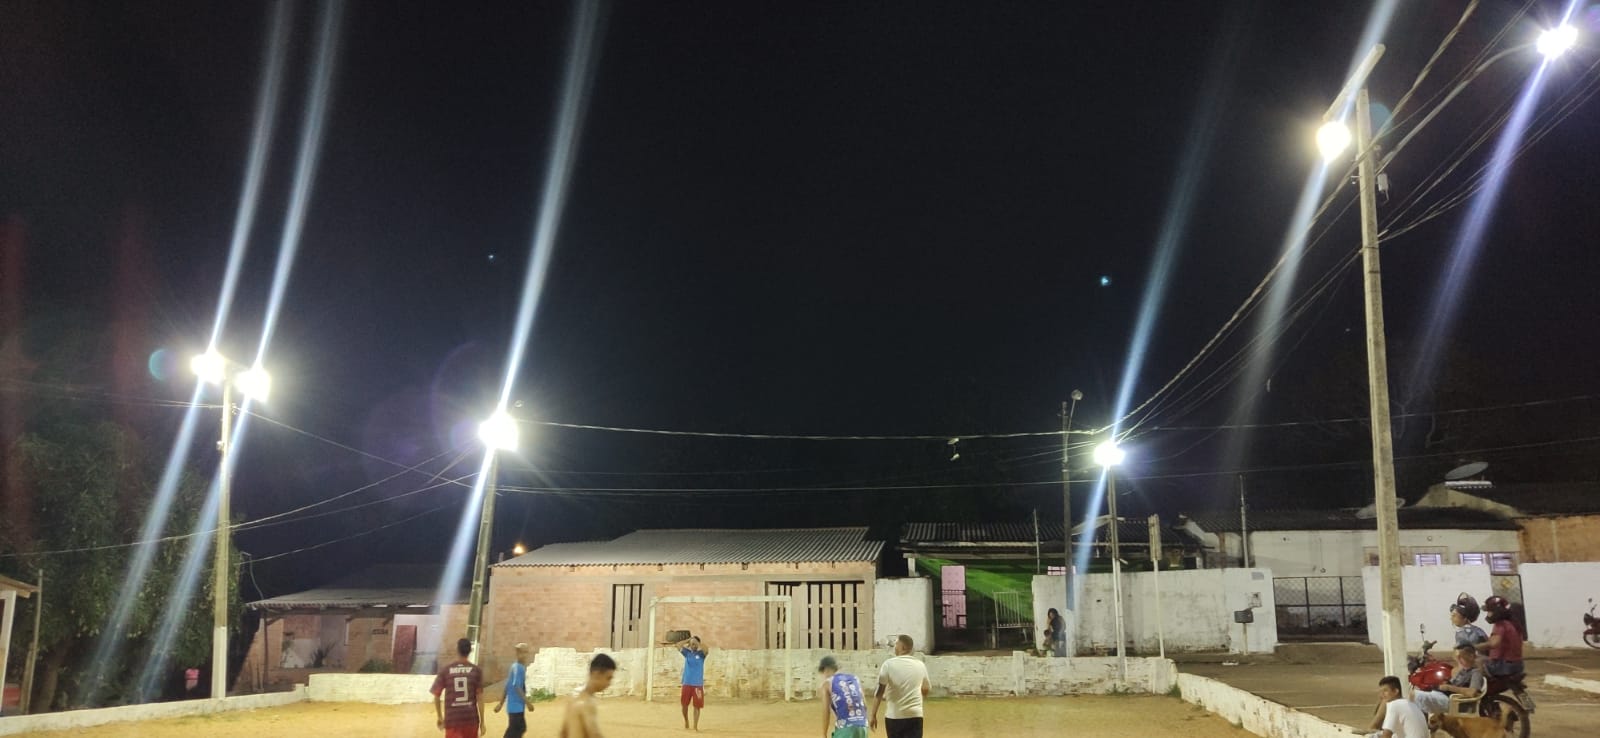 Iluminação é revitalizada em campo na zona sul após pedido do vereador Edimilson Dourado - News Rondônia